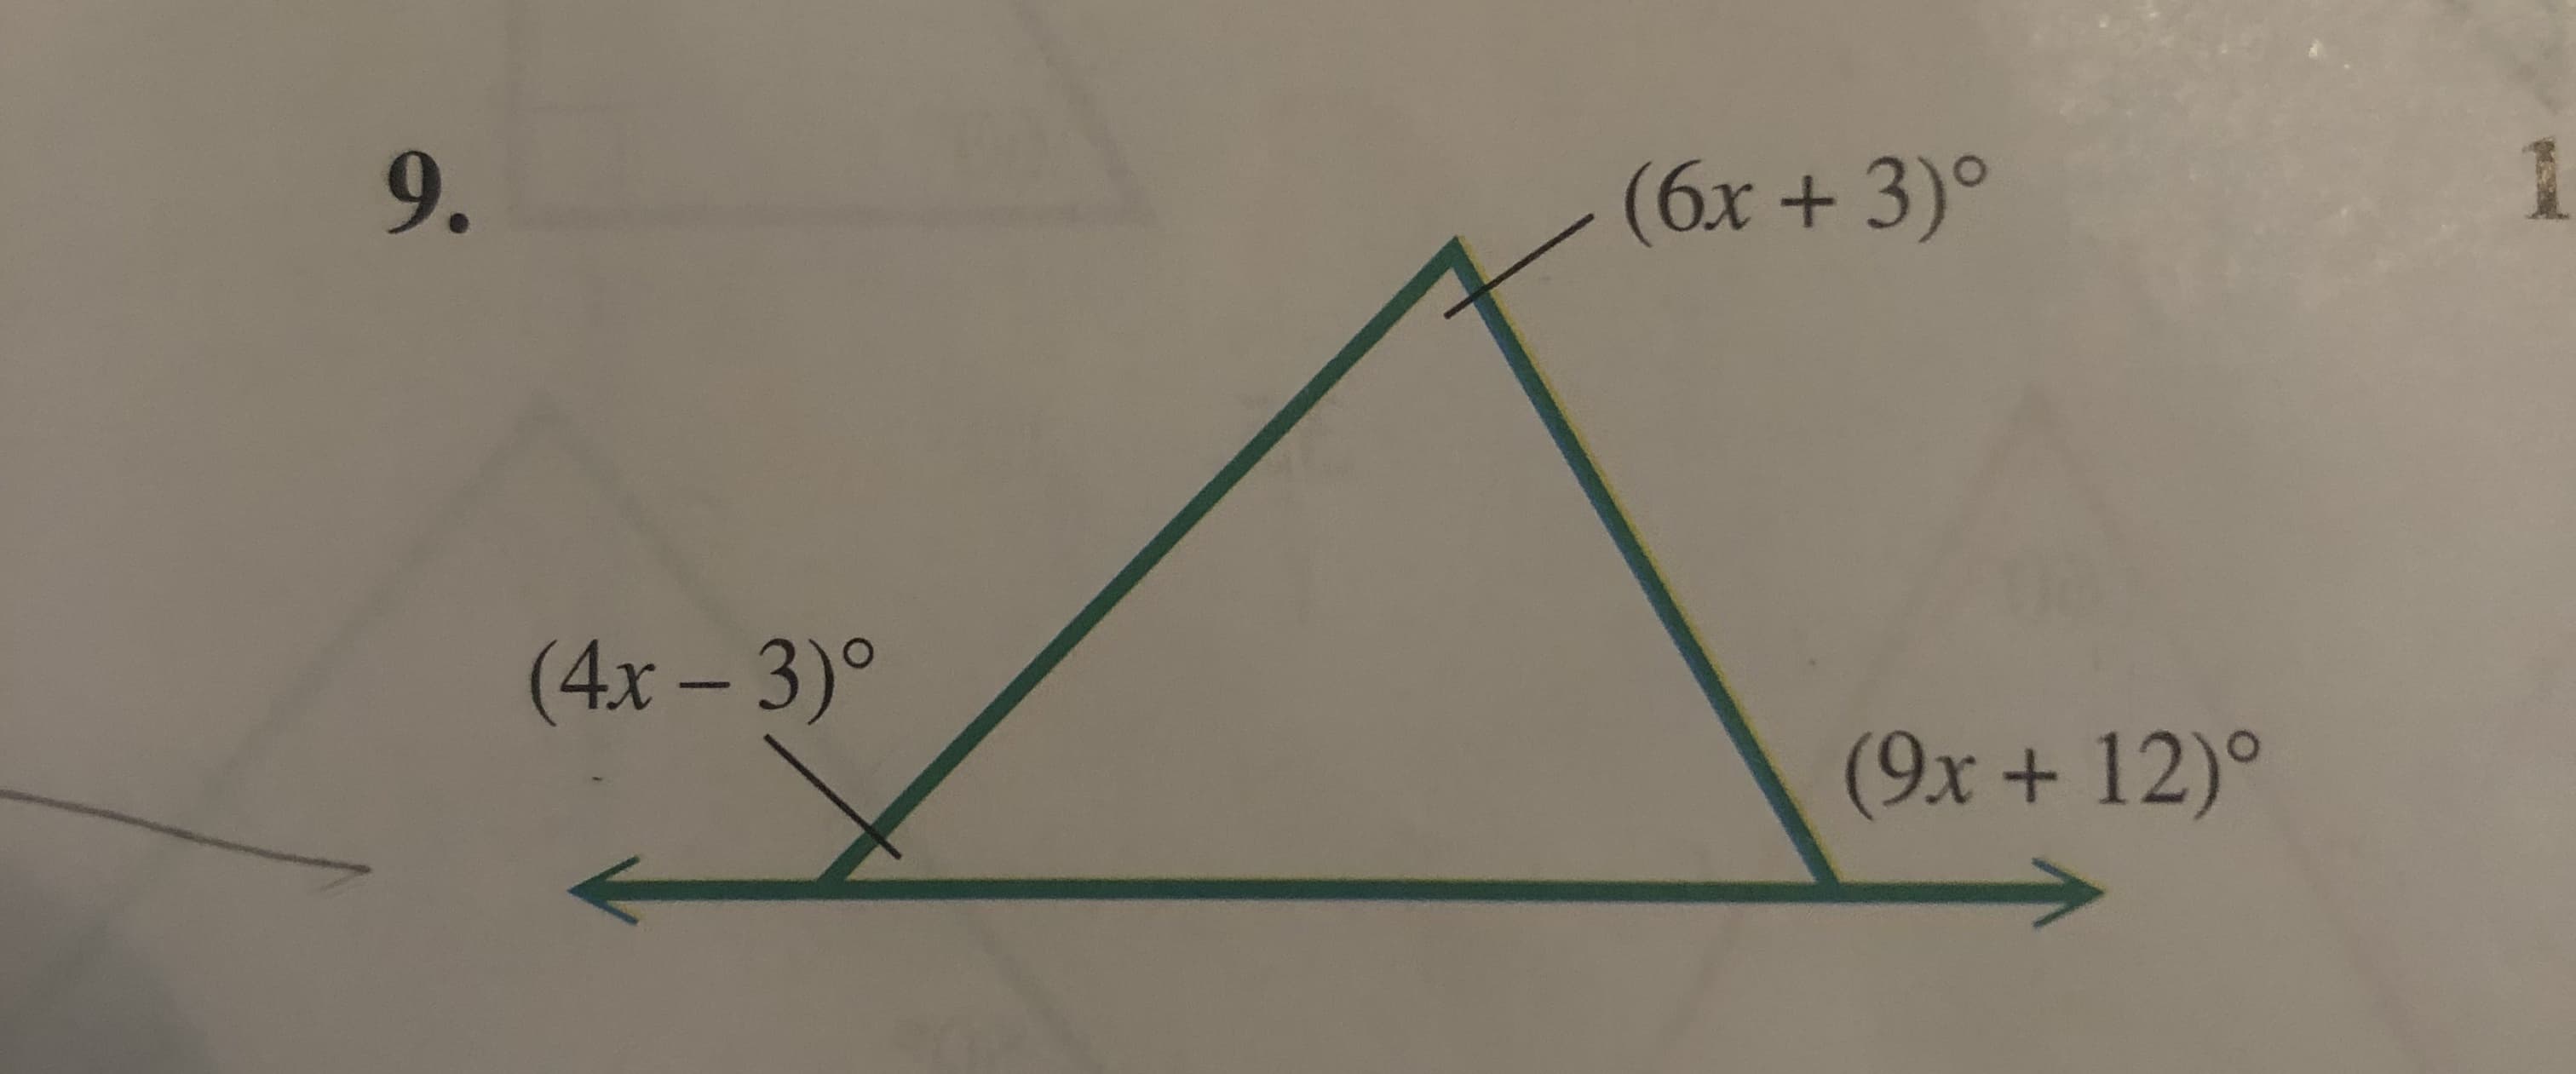 (6x+ 3)
9.
(4x-3)
(9x+ 12)
